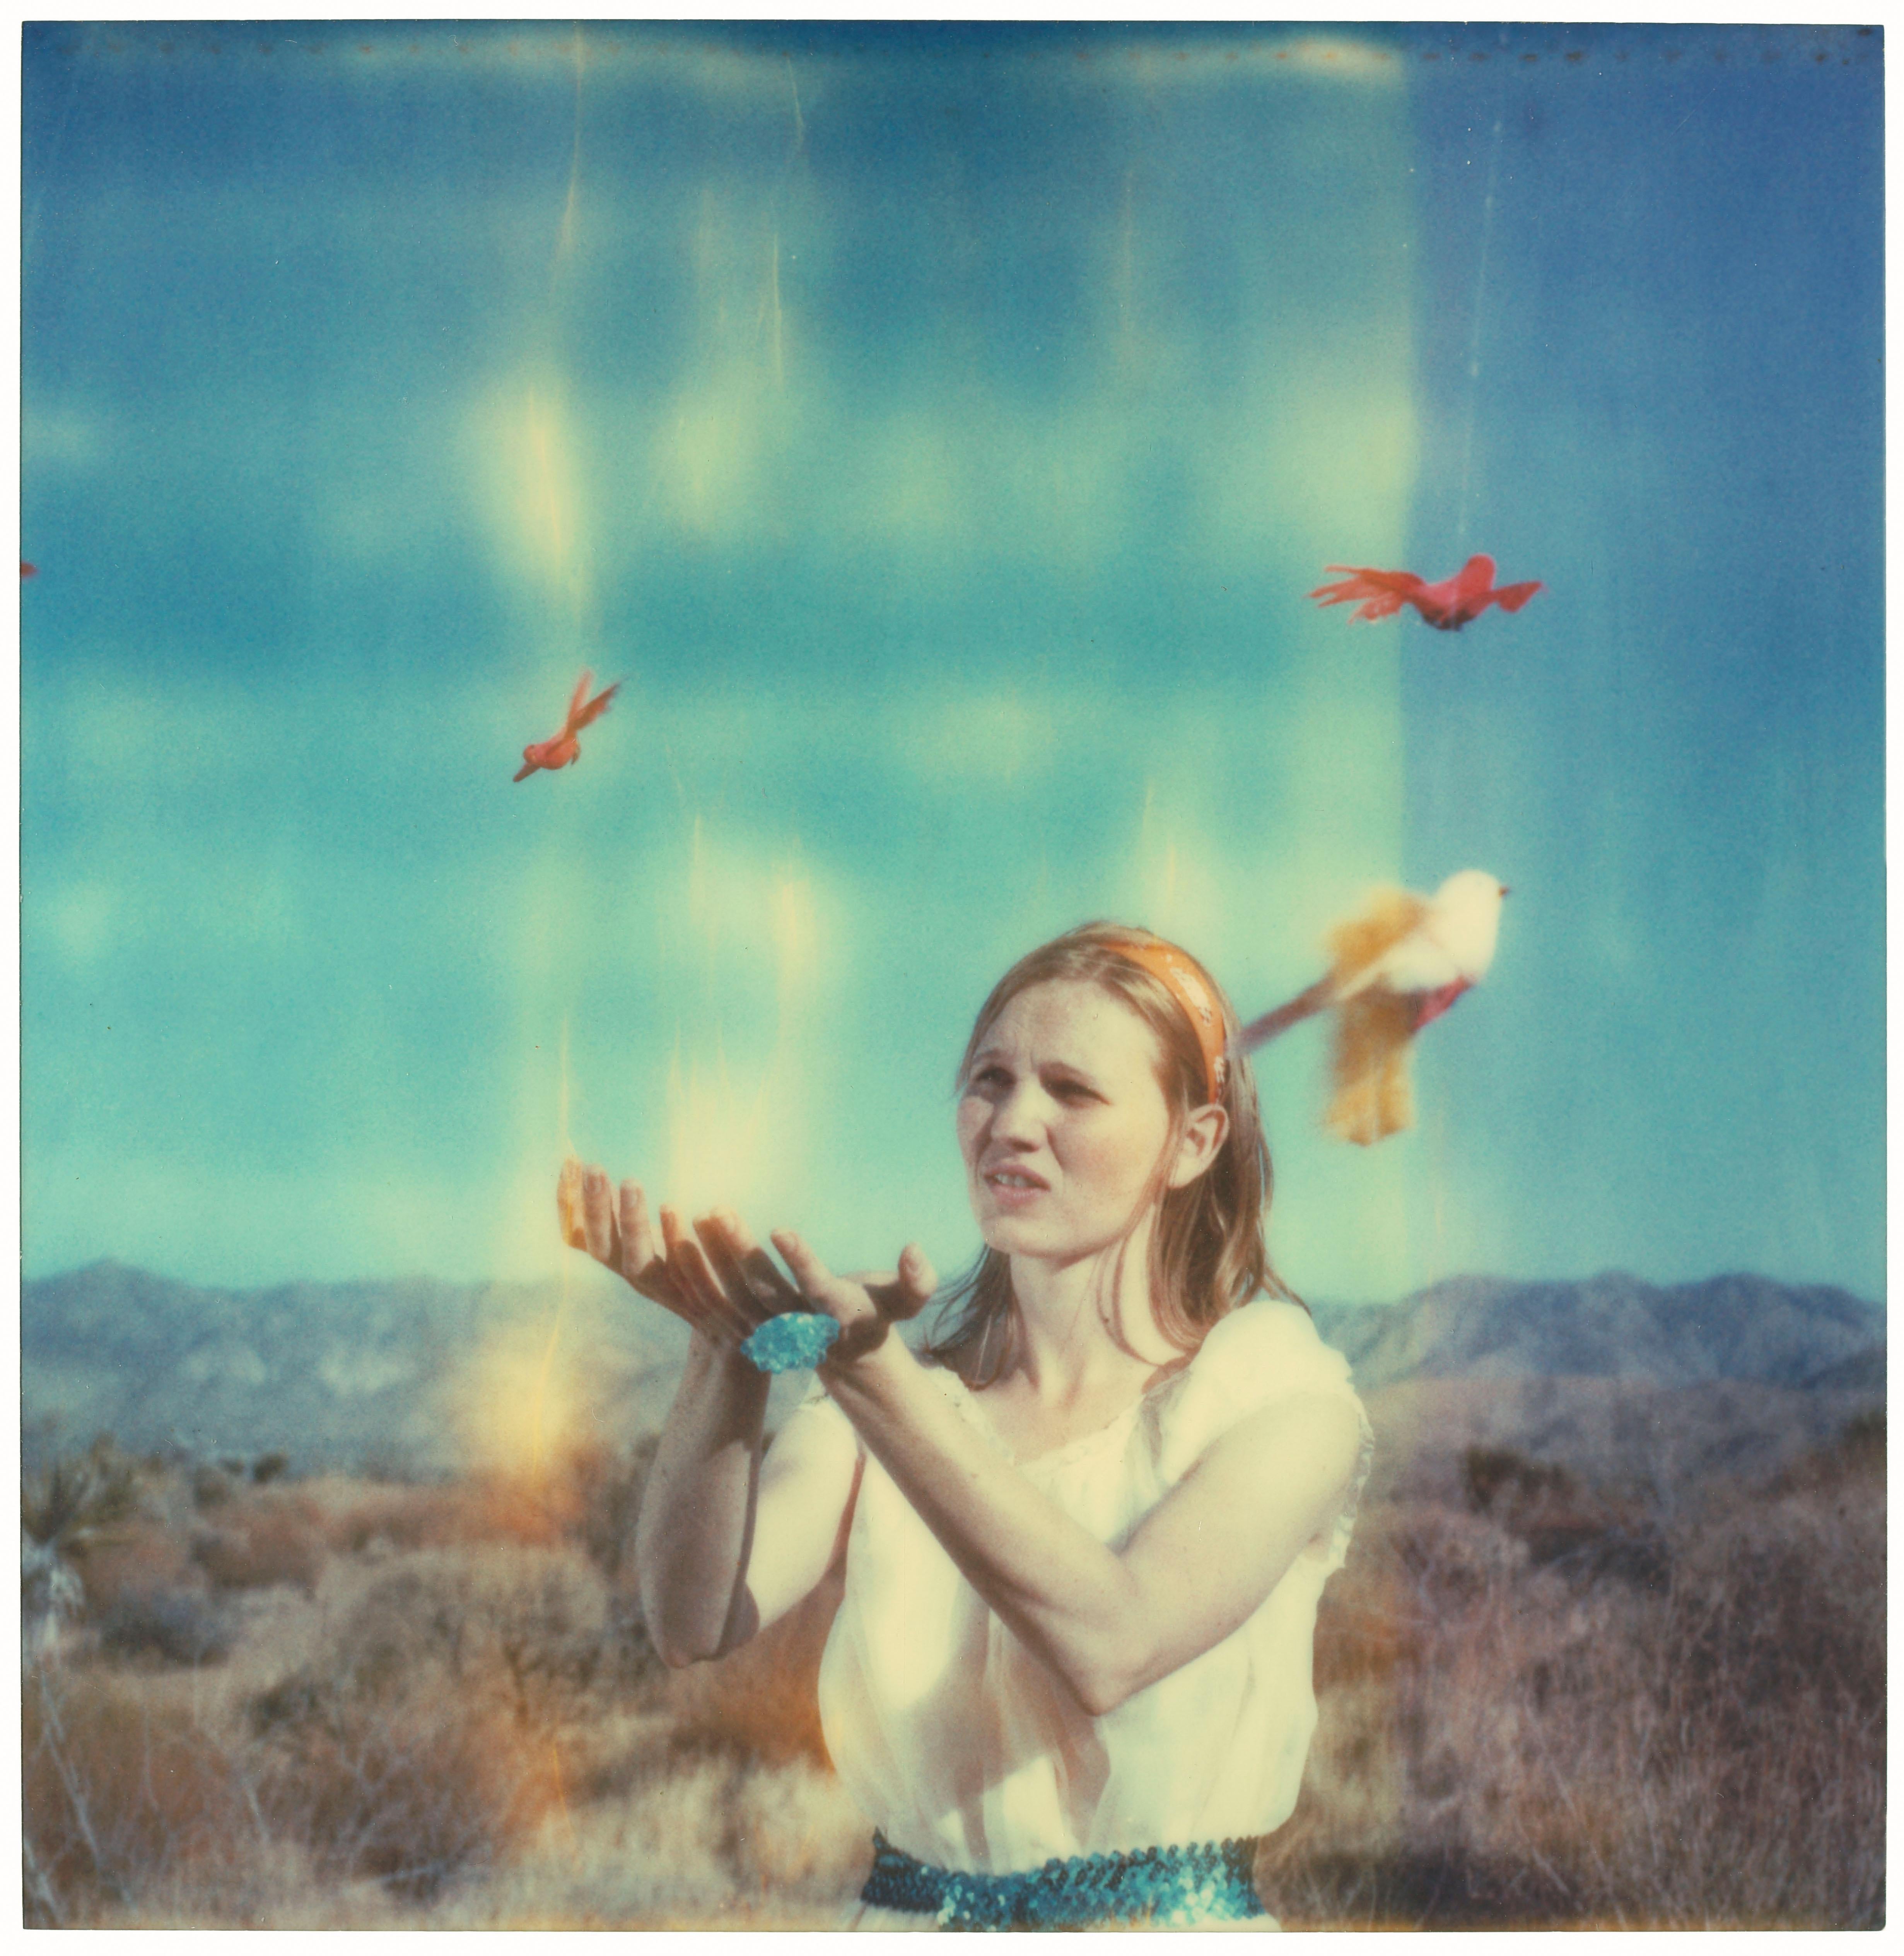 Stefanie Schneider Portrait Photograph – Letting Go (Haley und die Vögel) 